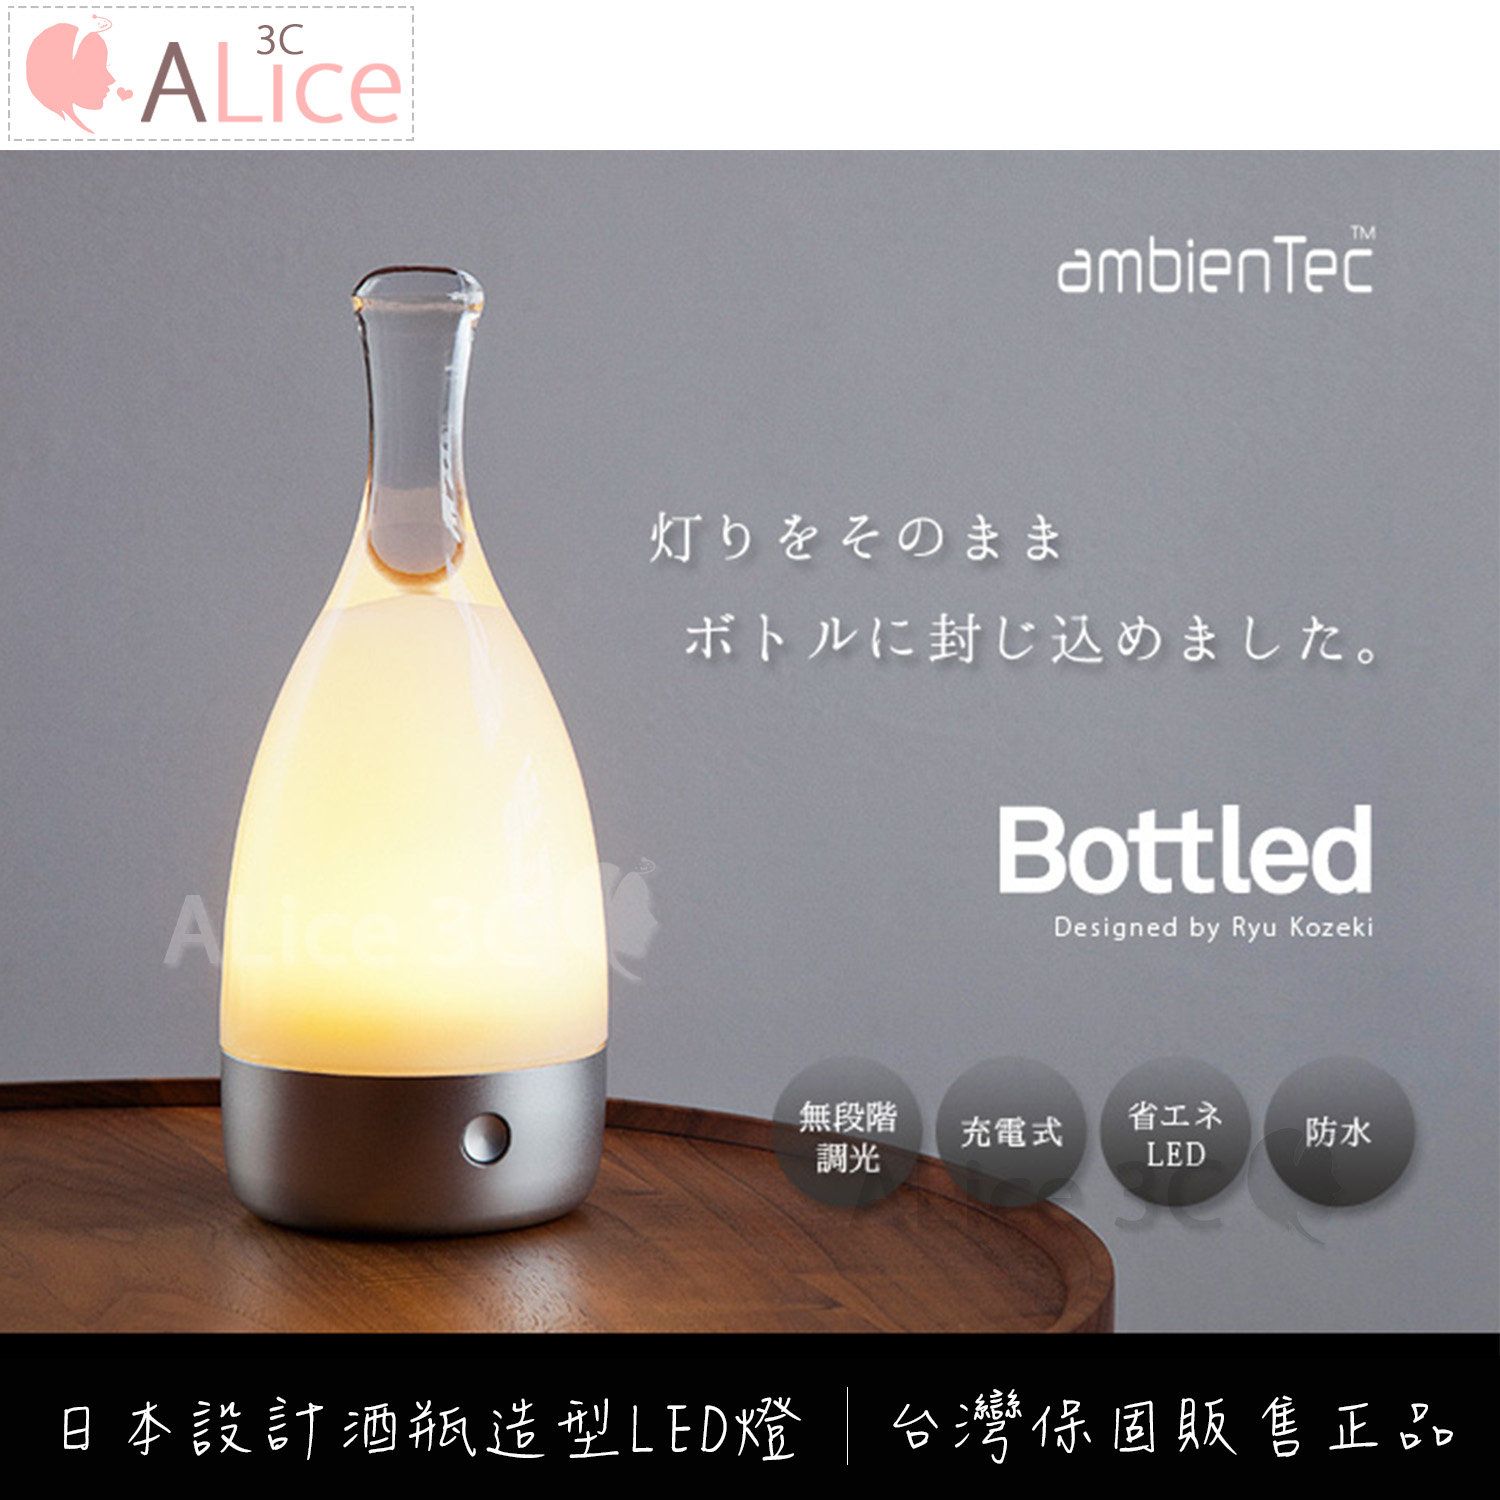 日本 ambientec Bottle 無線 LED 酒瓶燈 【E1-010】 台灣公司貨 有保固 裝飾燈 床頭燈 檯燈